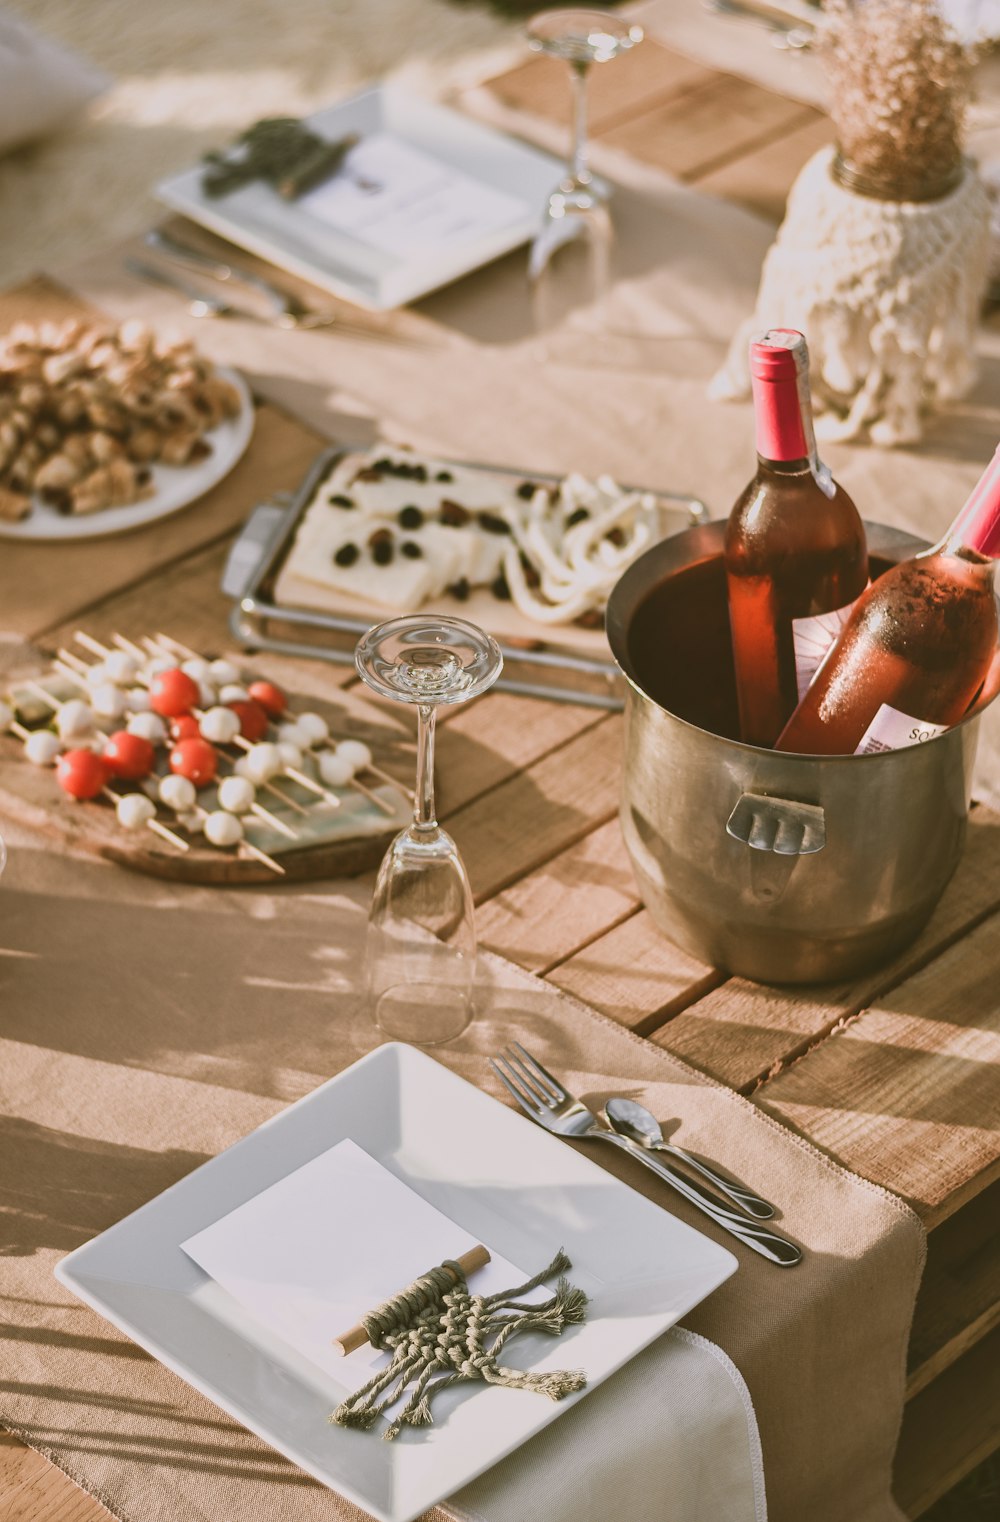 wine bottle on stainless steel bucket beside wine glass on table